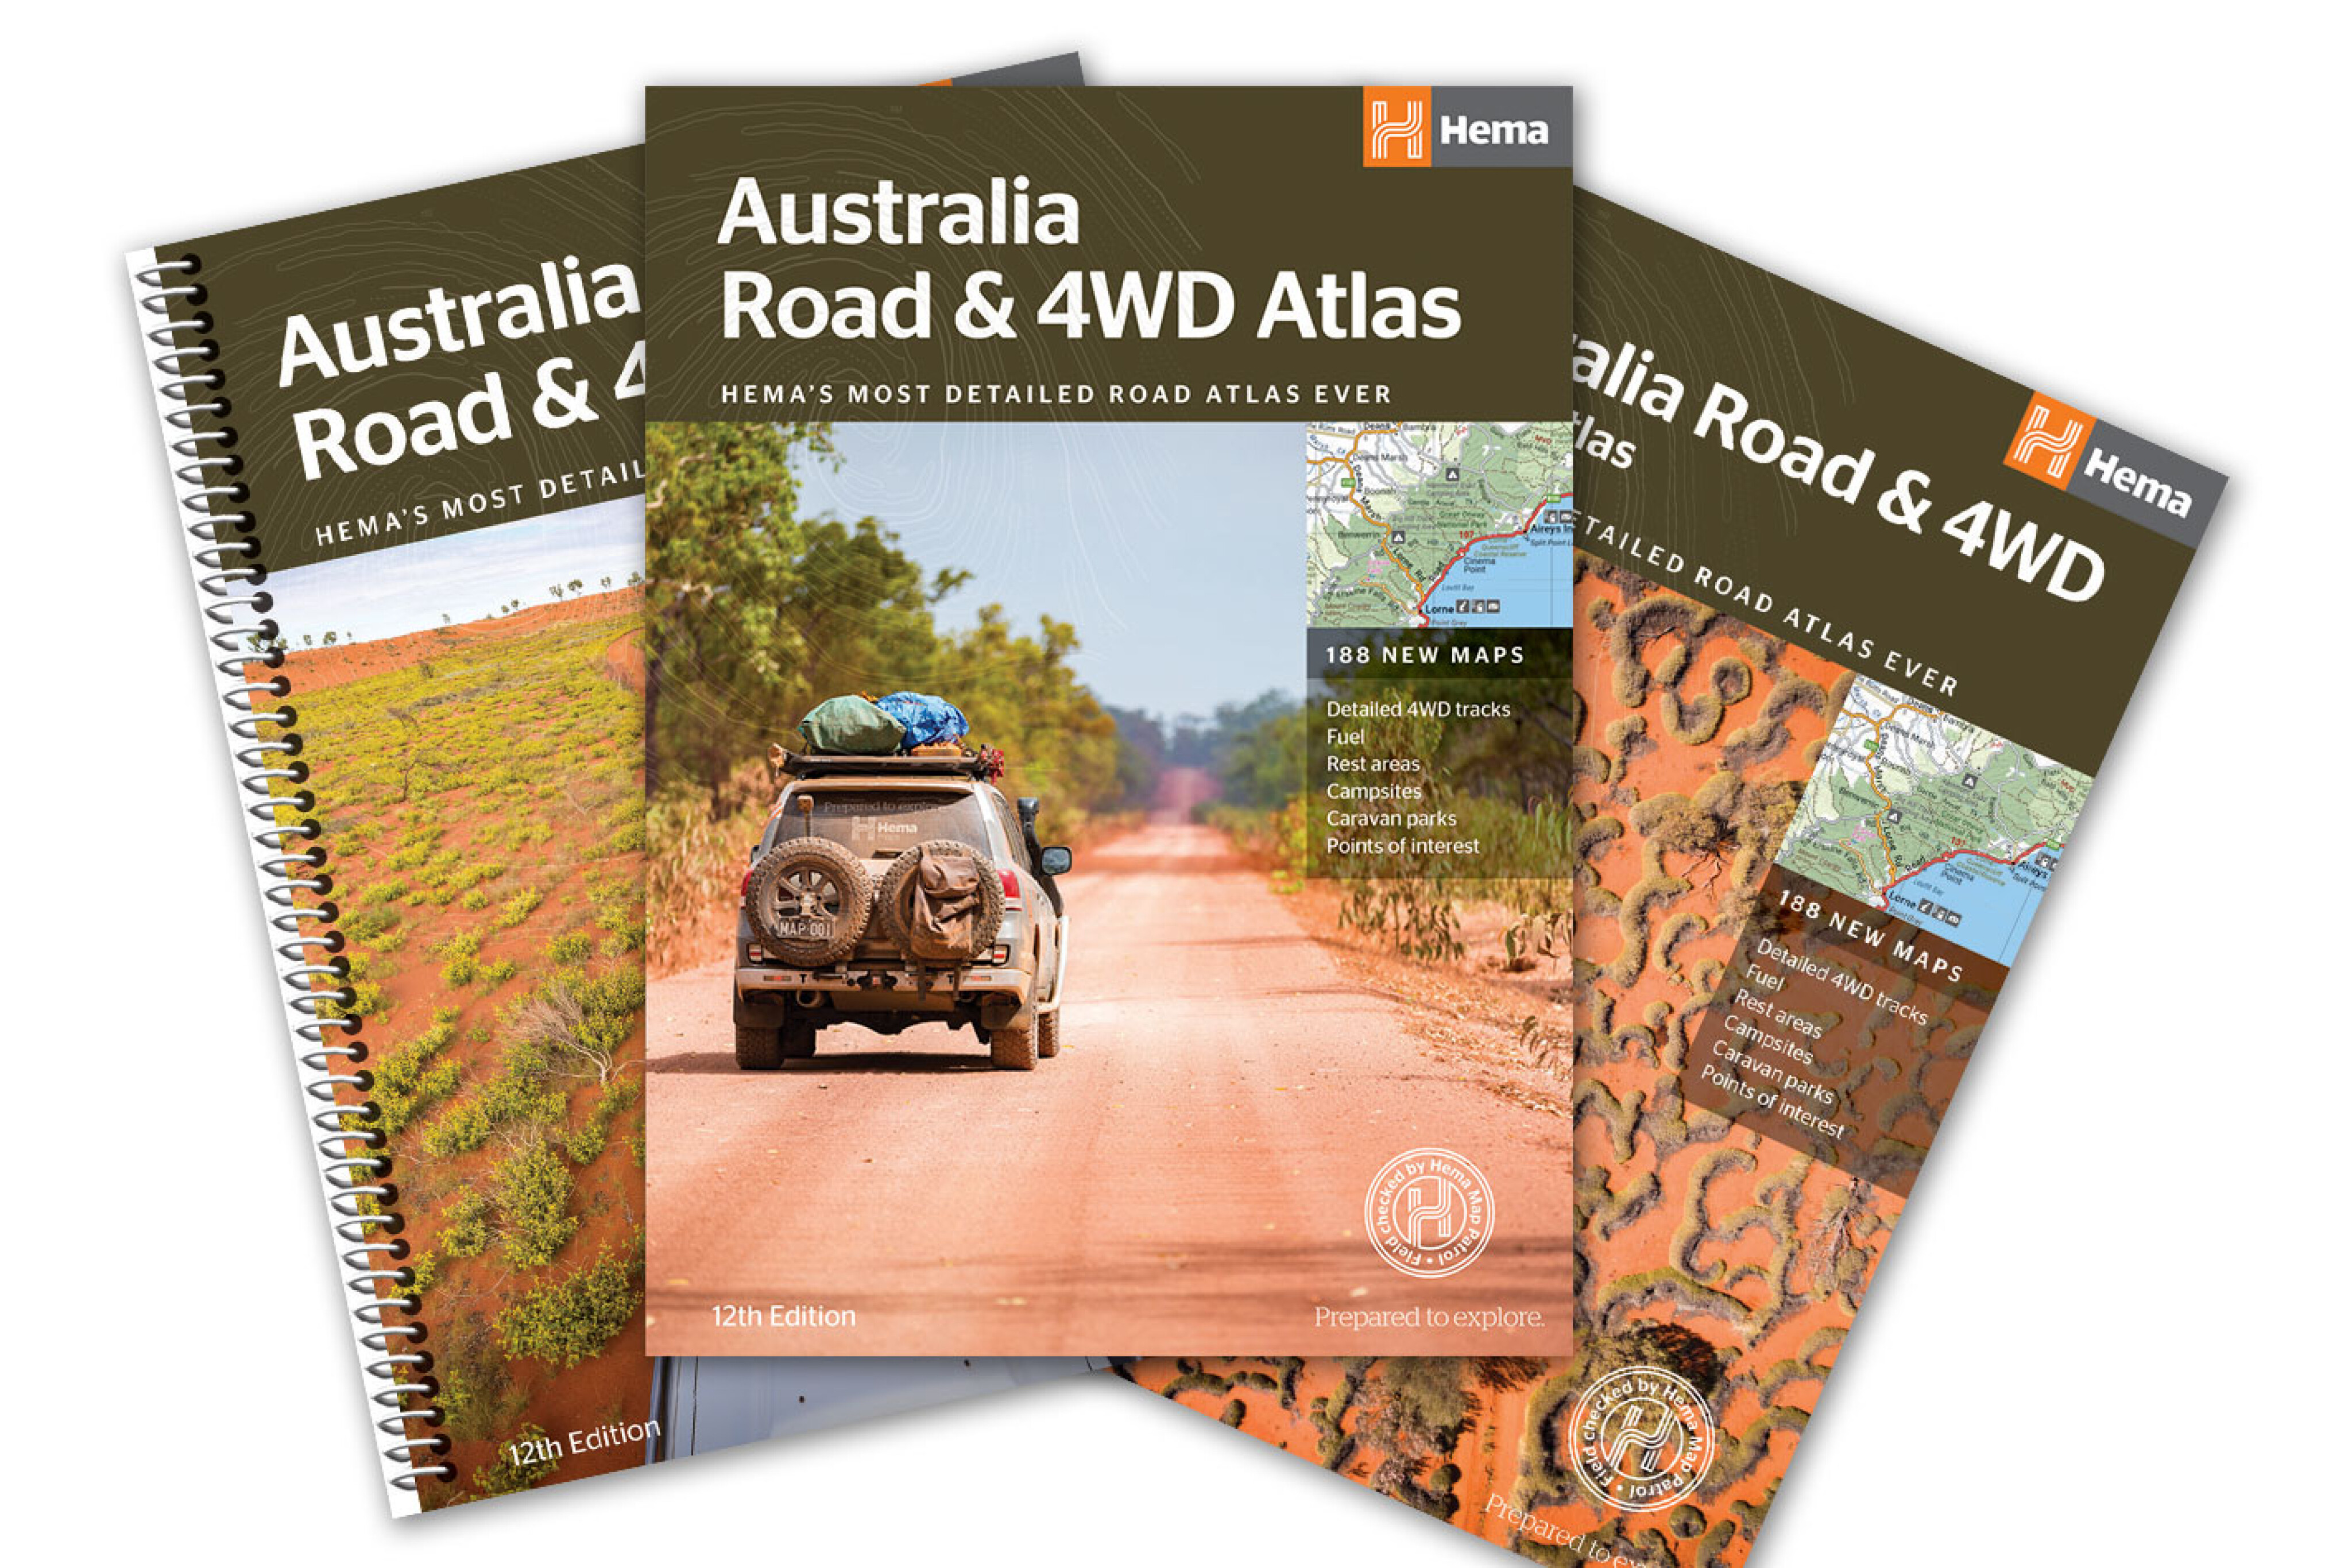 b7f009aa/new 4x4 gear hema maps australia atlas jpg